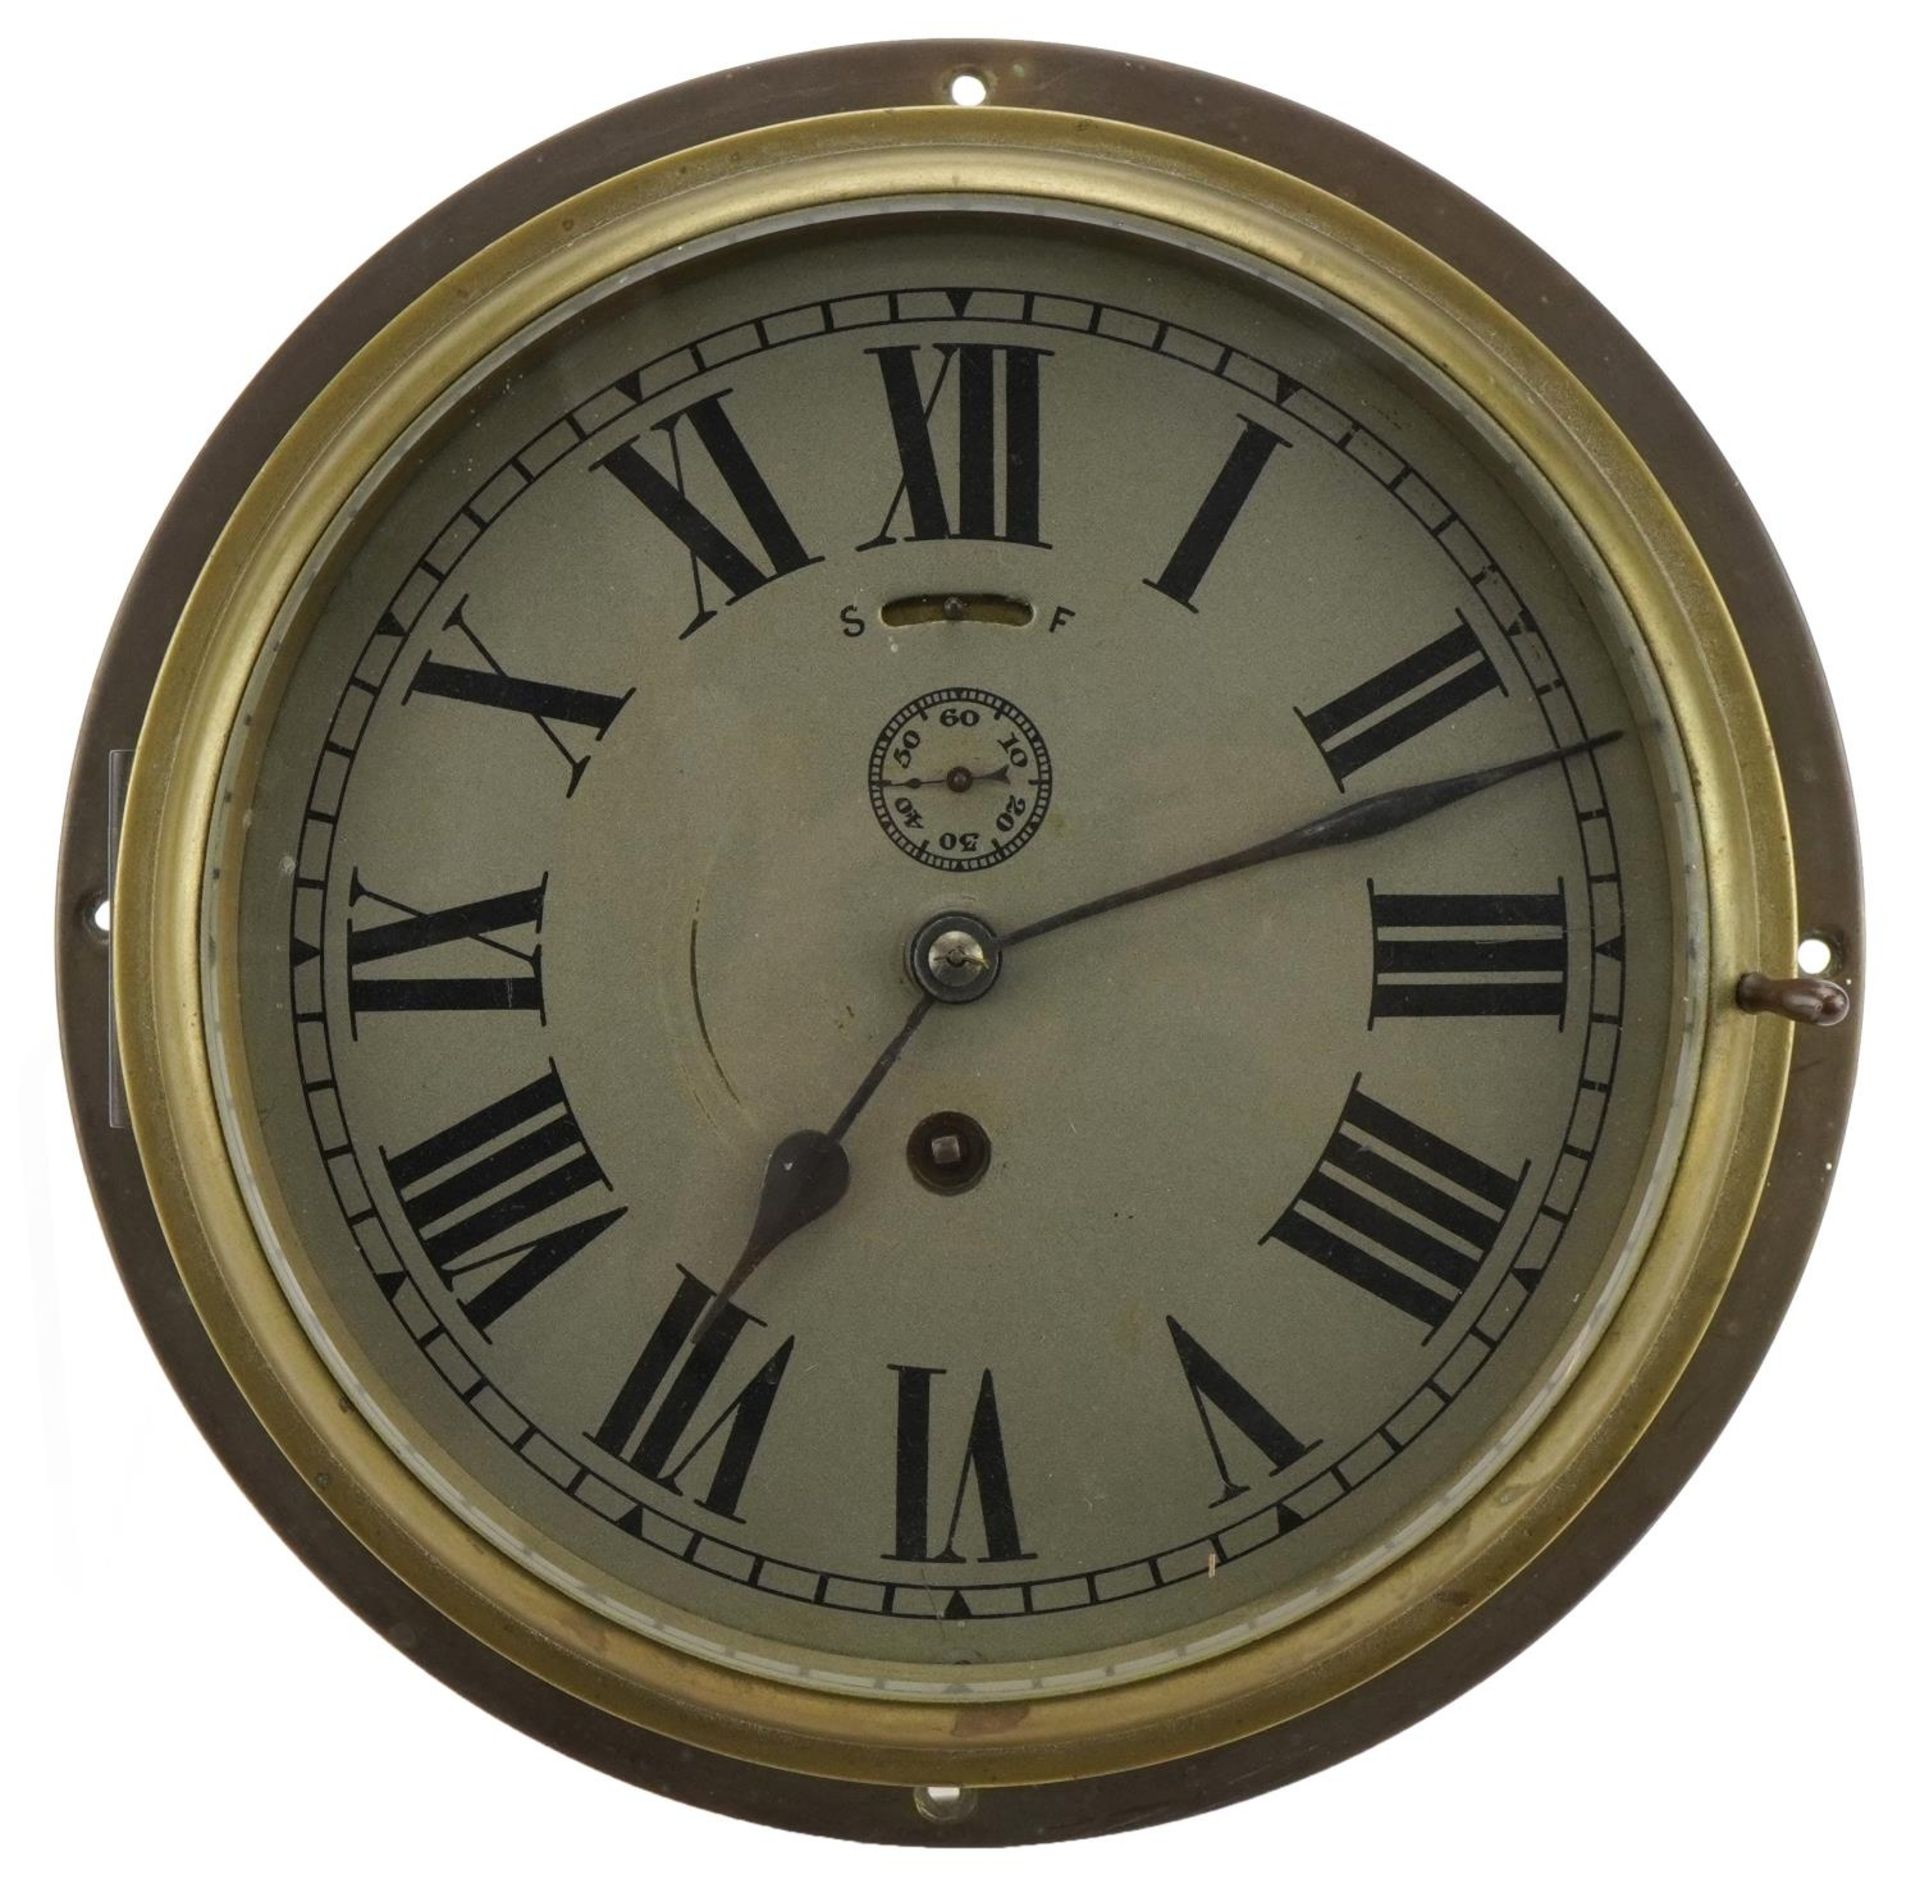 Brass cased ship's design bulkhead clock with Roman numerals, 25cm in diameter,